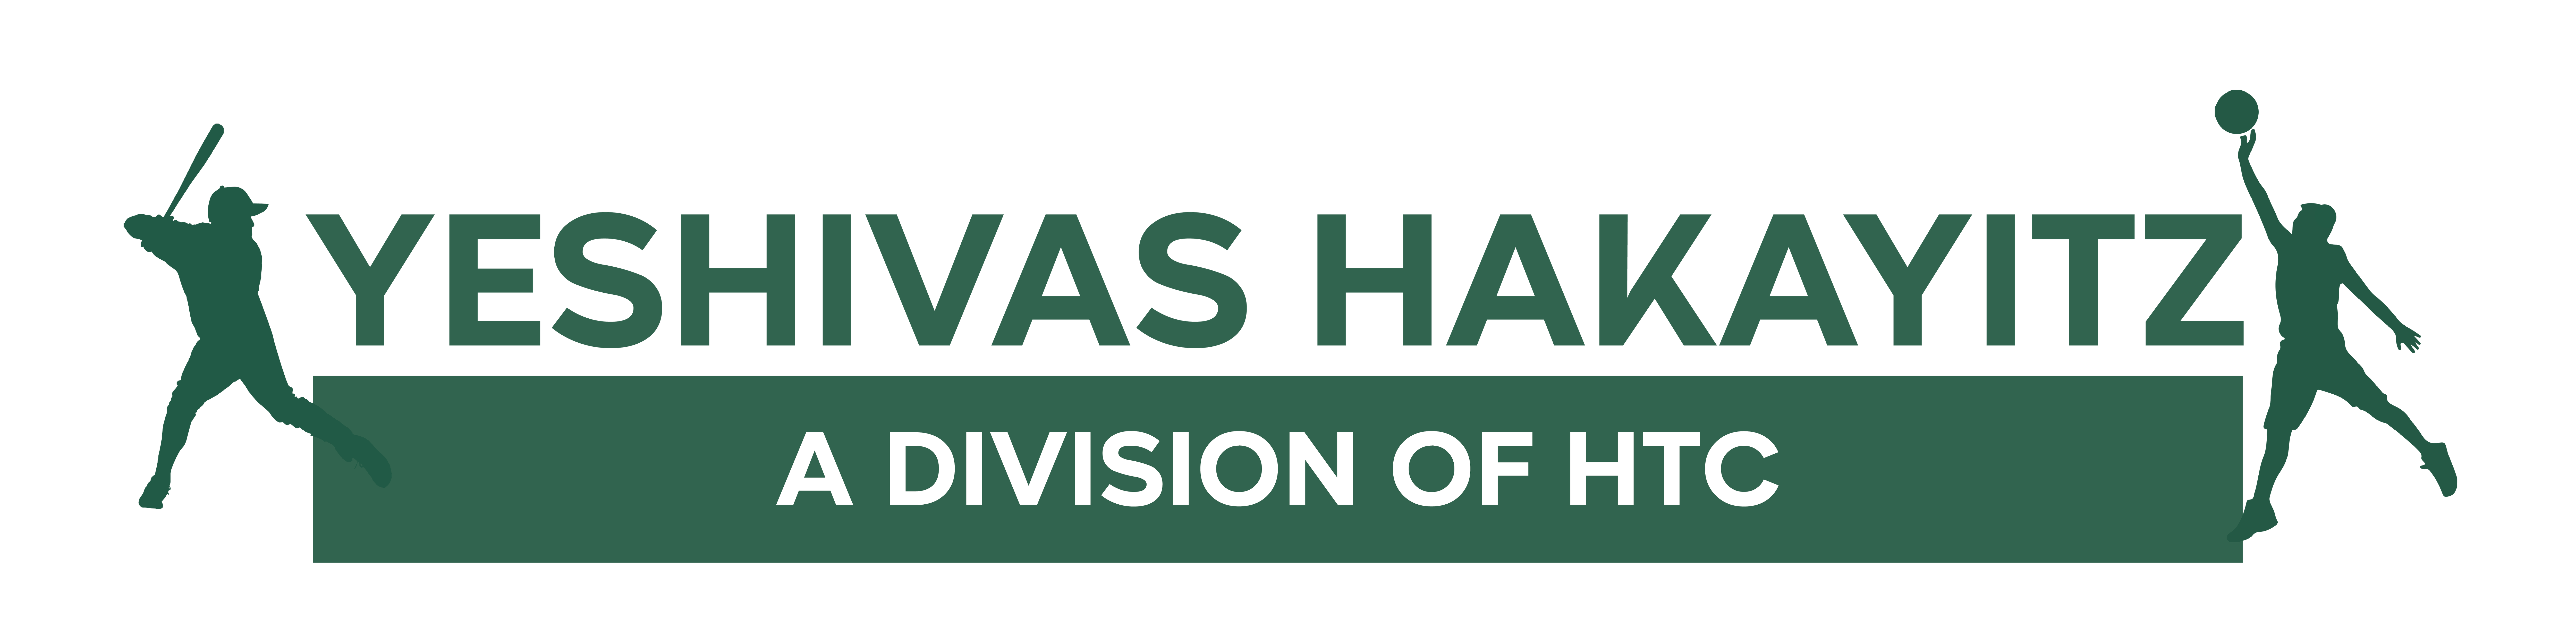 Yeshivas HakayitzYeshivas Hakayitz a Division of HTC